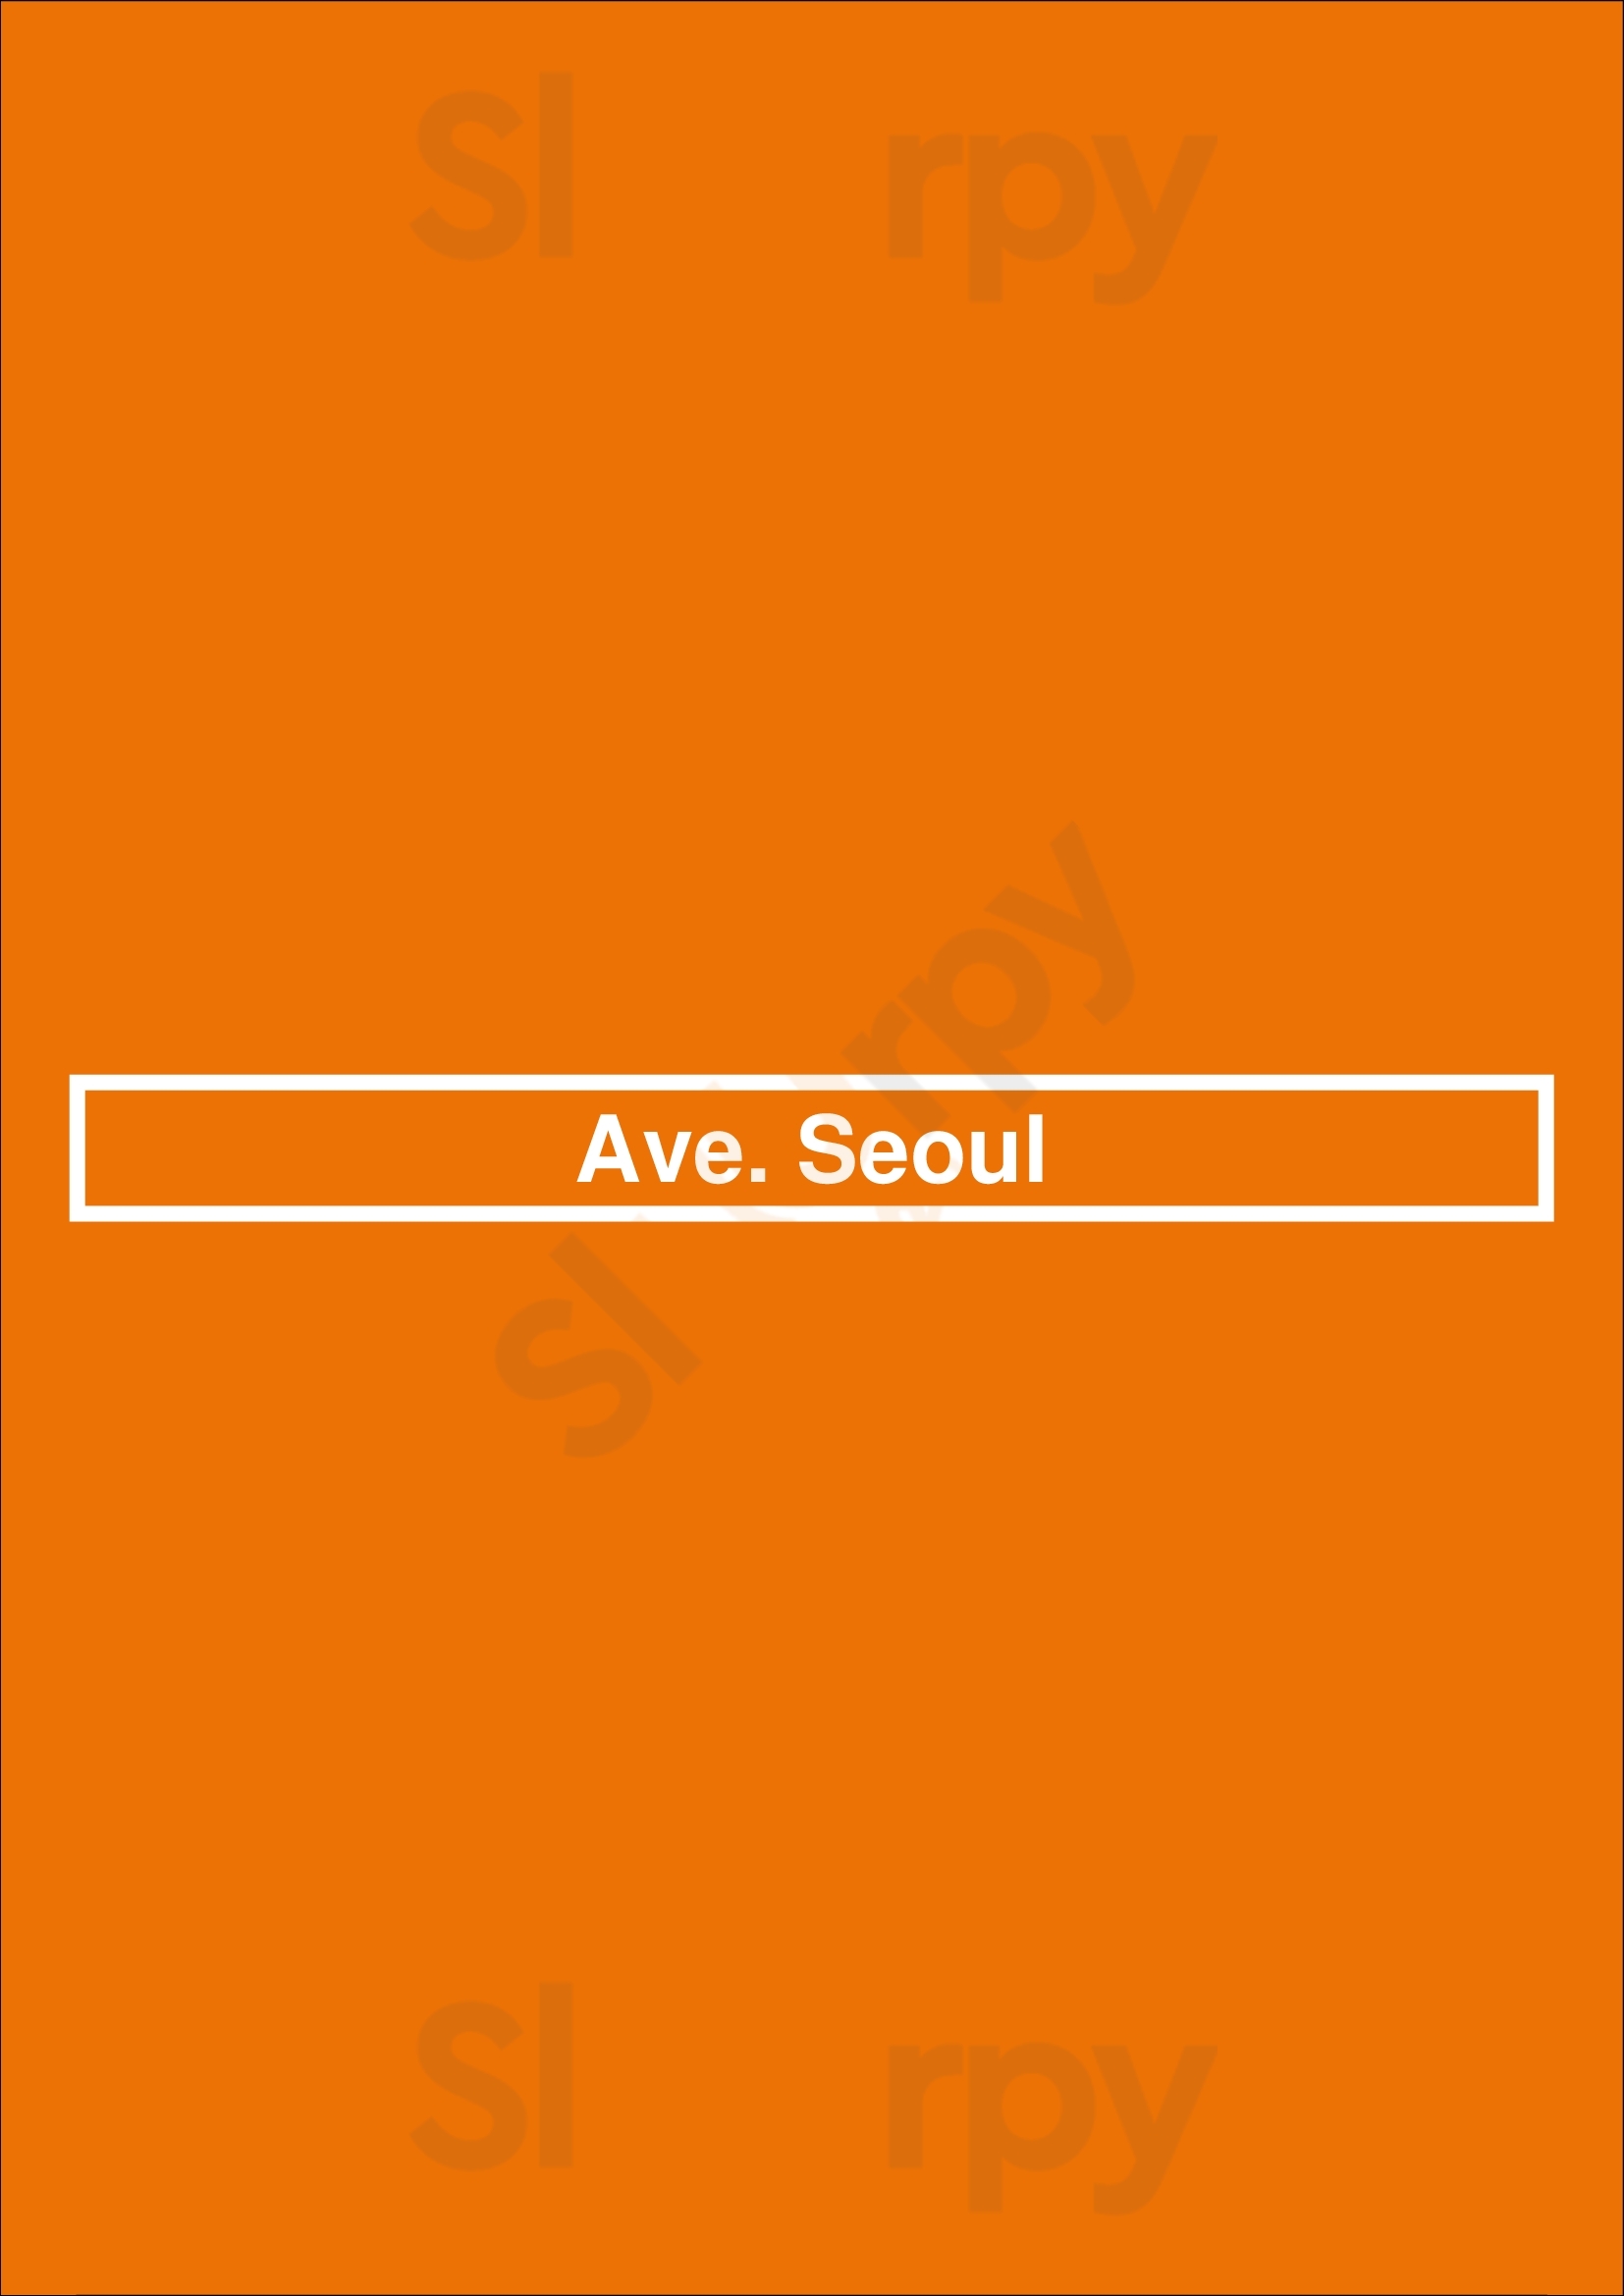 Ave. Seoul Montreal Menu - 1